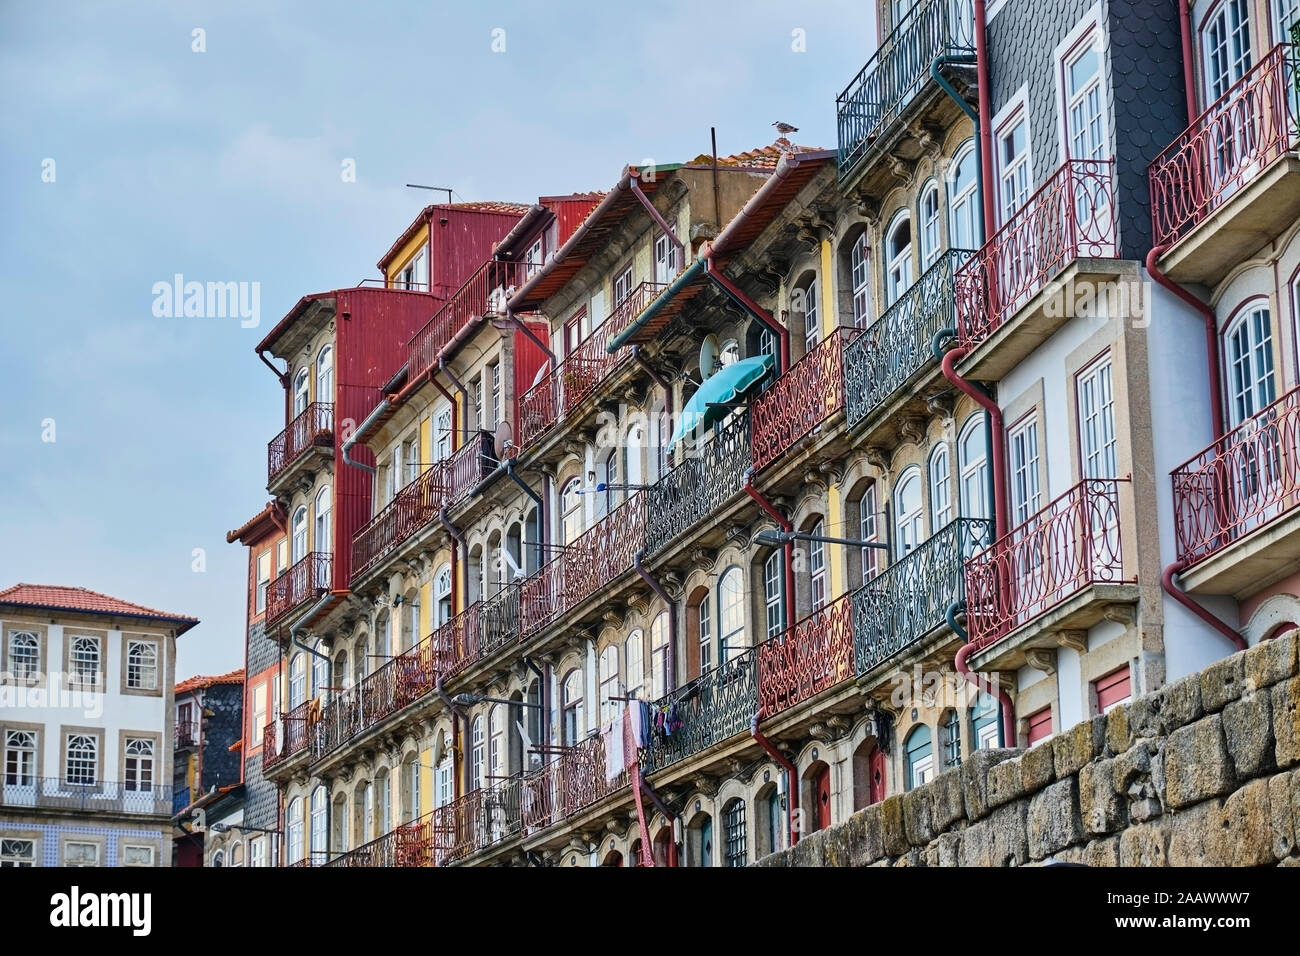 Portugal, Porto, coloridas casas en plaza Ribeira Foto de stock